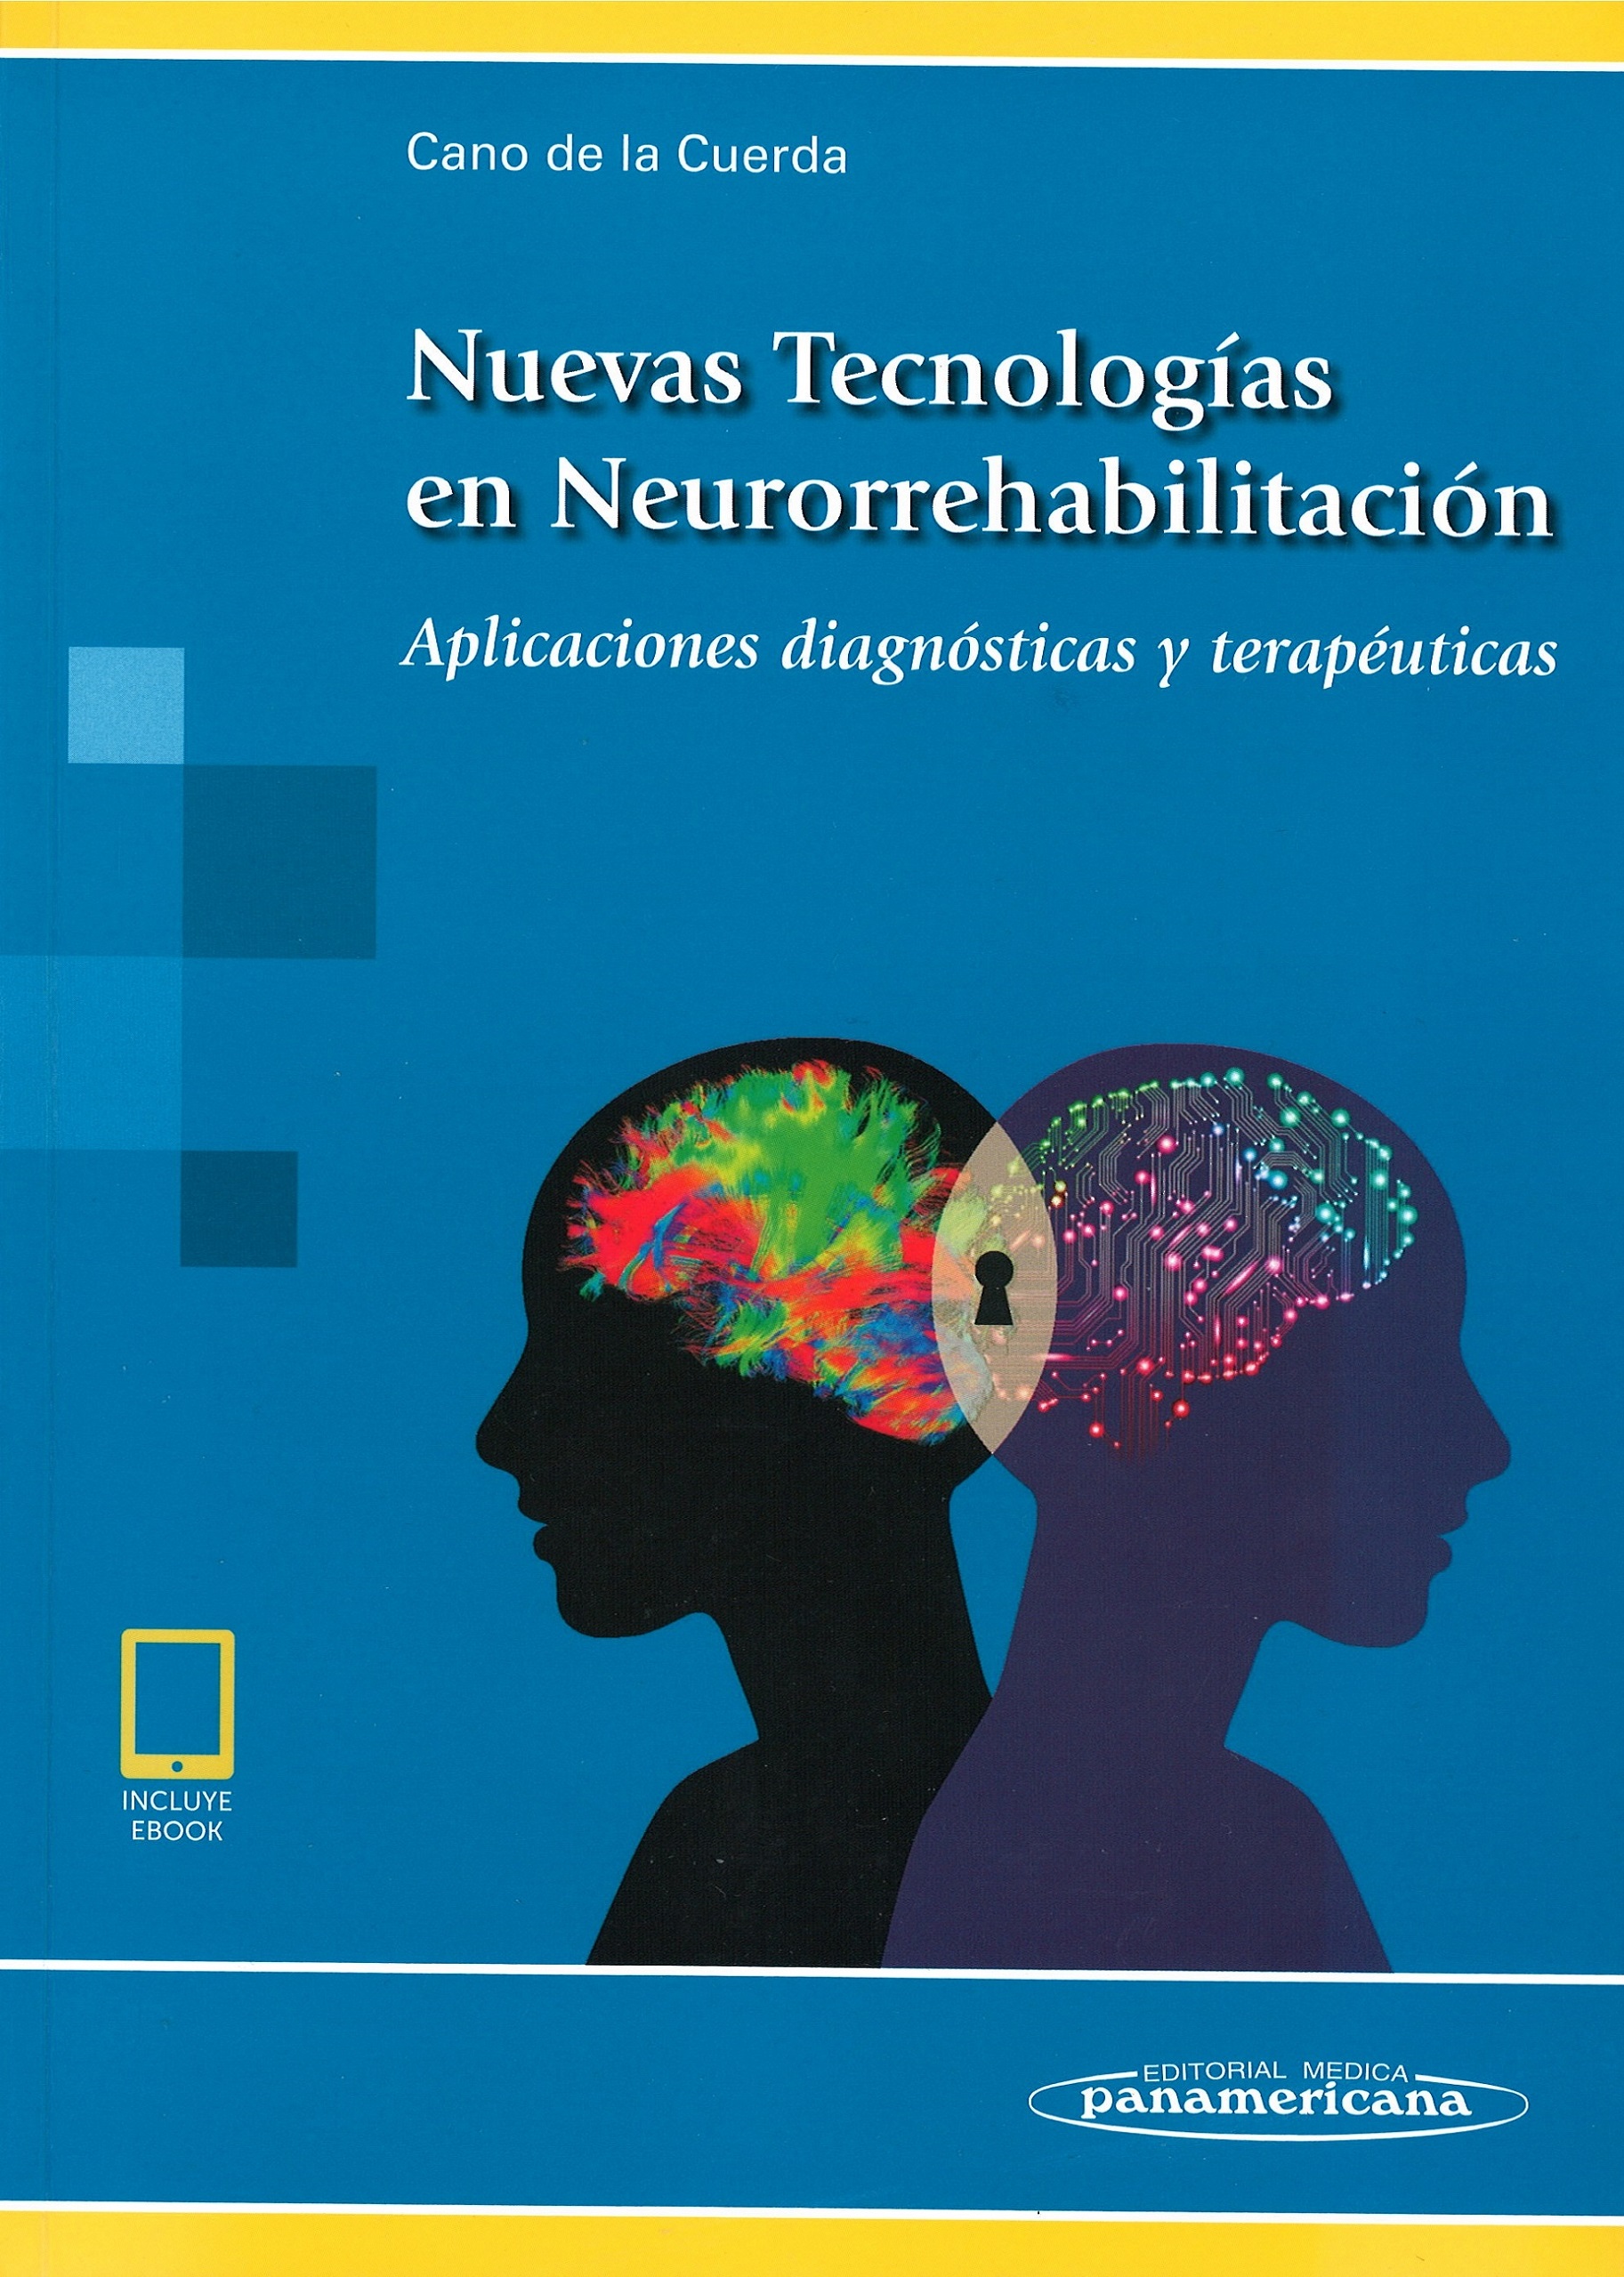 Imagen de portada del libro Nuevas tecnologías en neurorrehabilitación